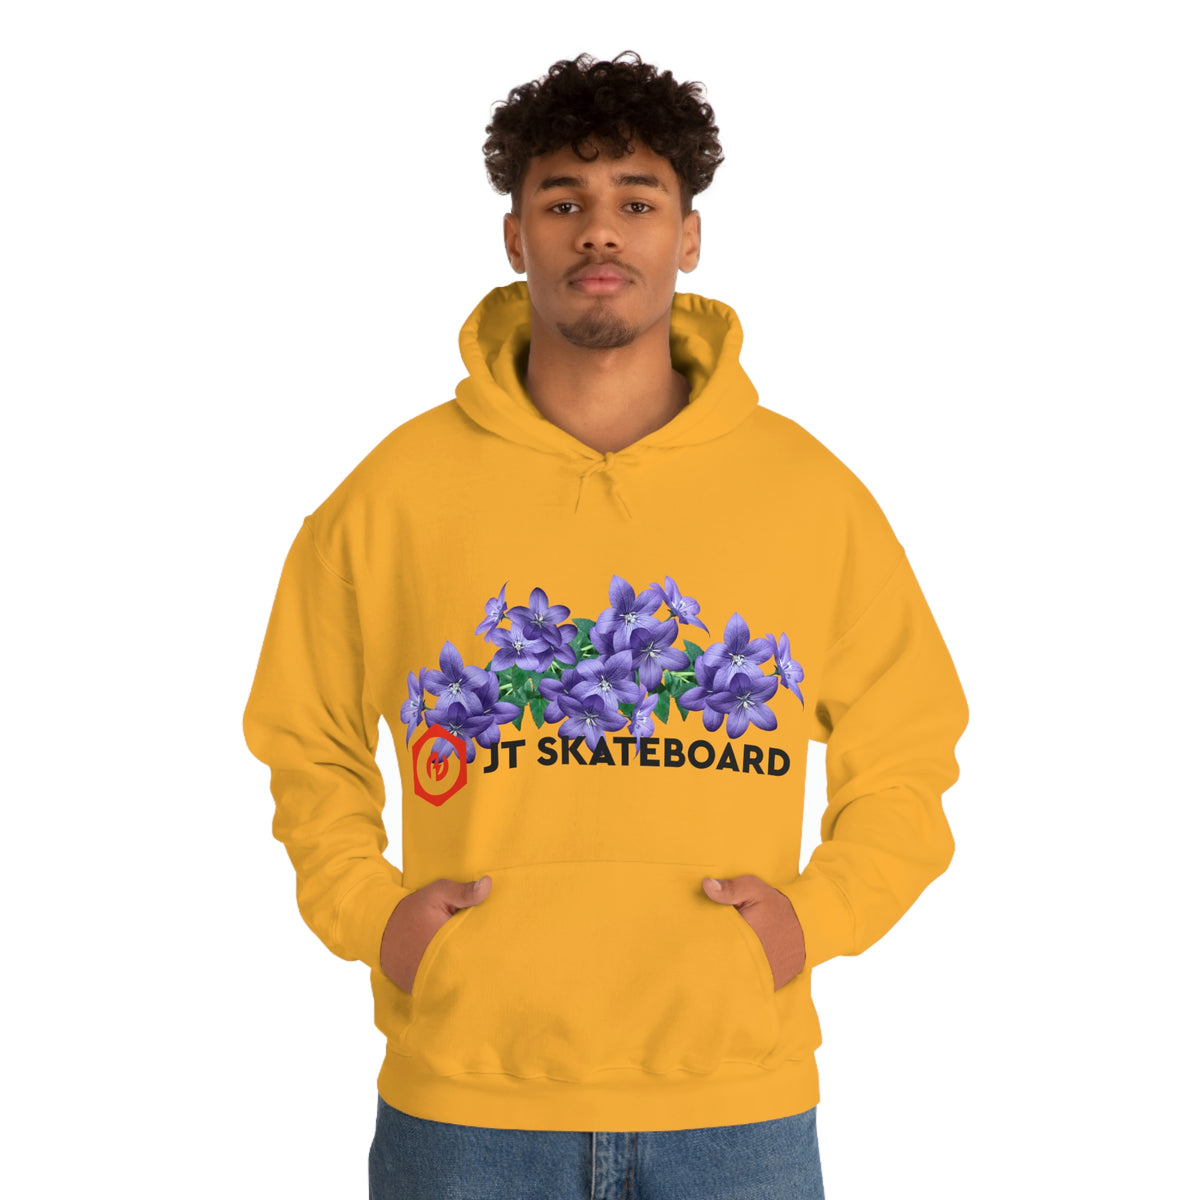 Summer - Unisex Heavy Blend Hooded Sweatshirt - JT Skateboard